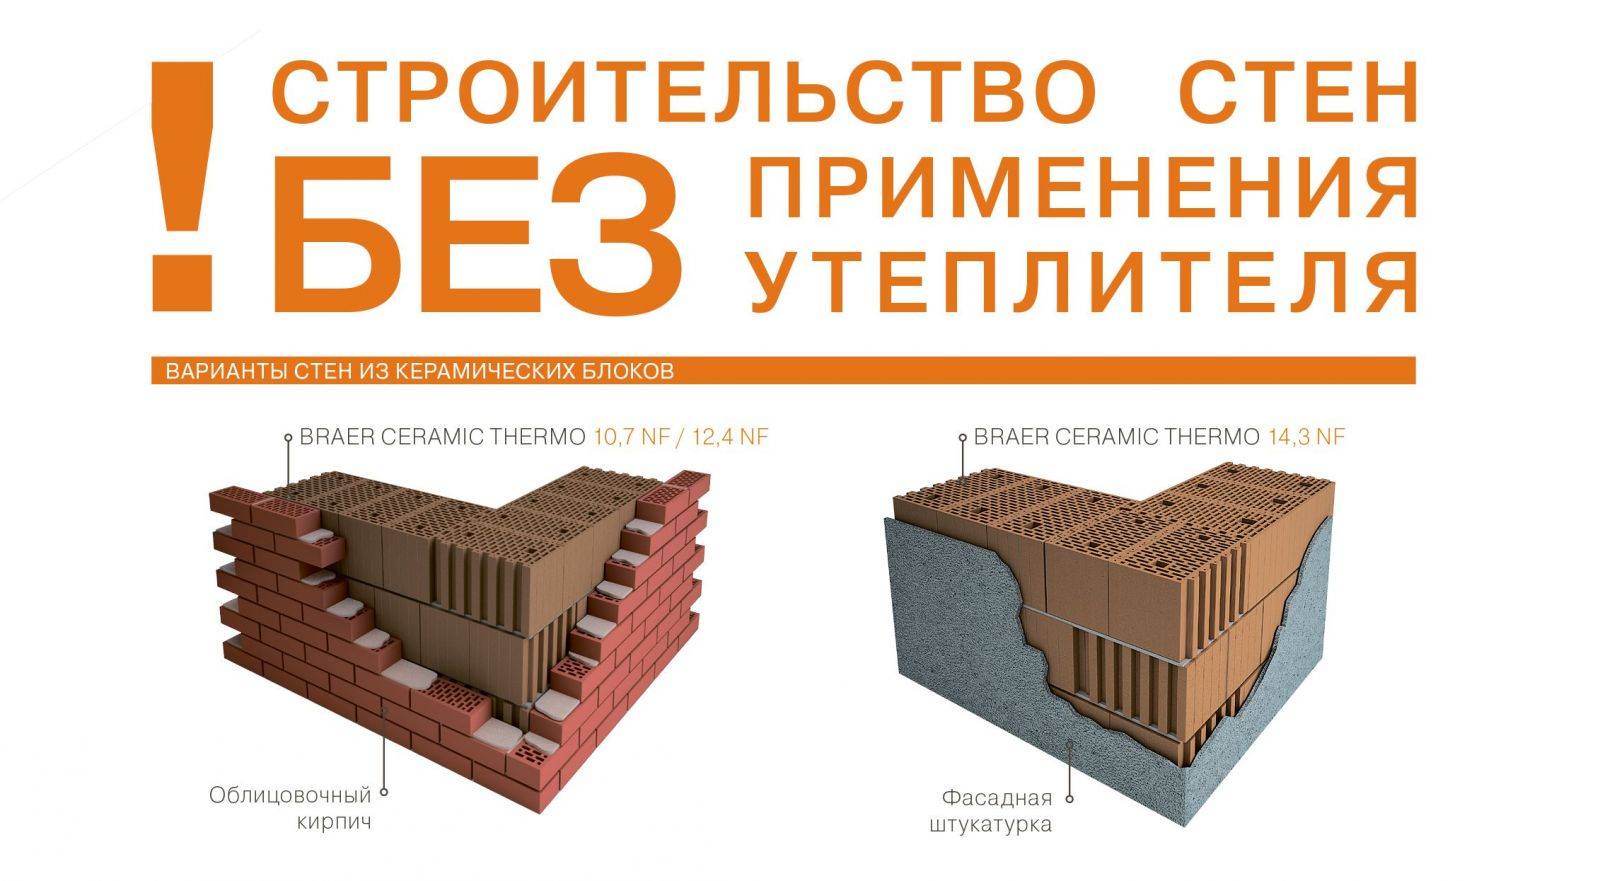 Основные свойства керамических блоков браер. услуги компании. описание и характеристики керамических блоков браер